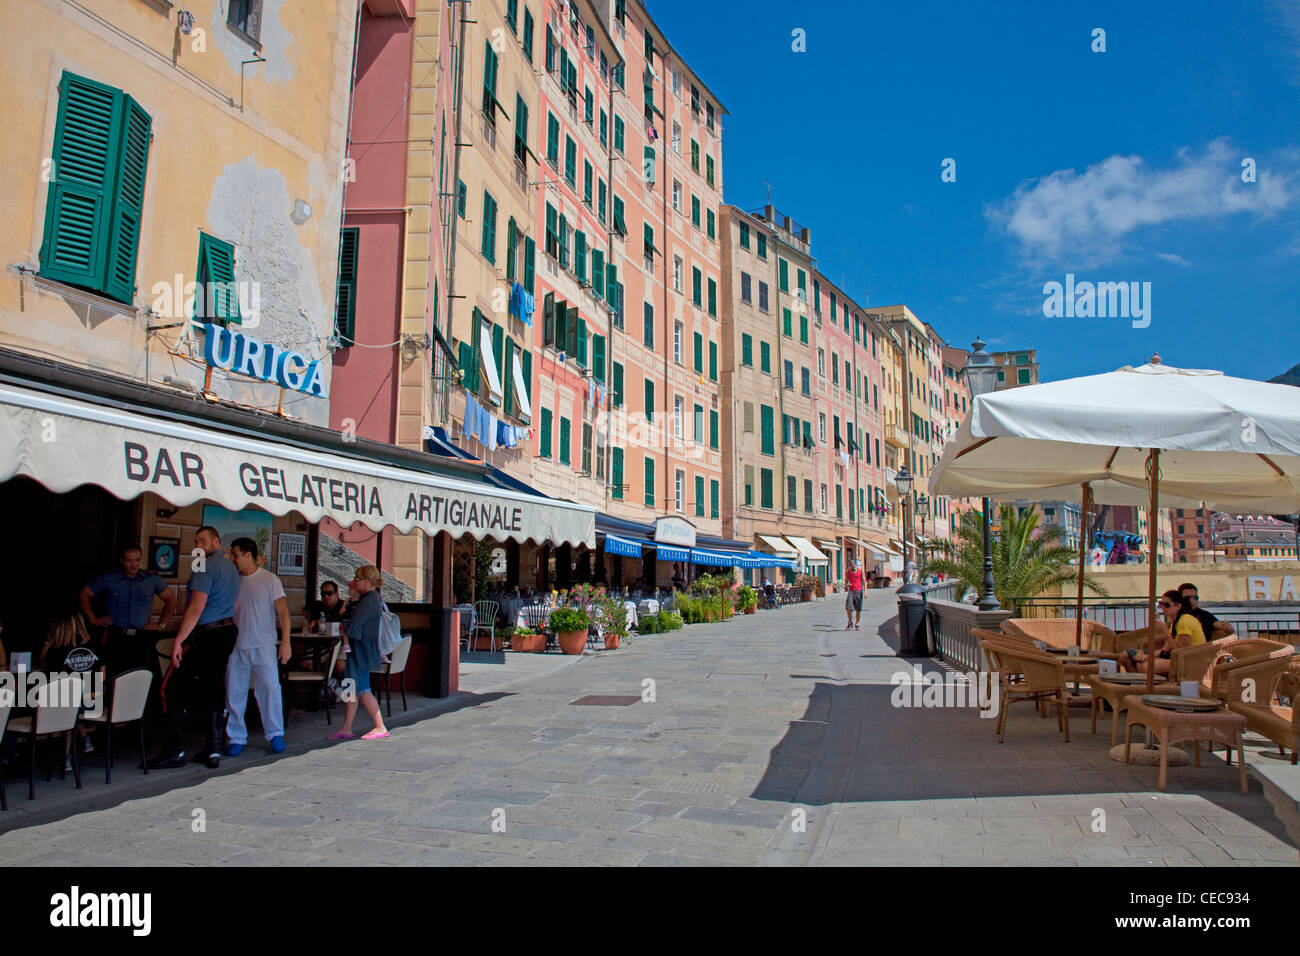 Street cafe at the beach promenade, fishing village Camogli, province Genua, Liguria di Levante, Italy, Mediterranean sea, Europe Stock Photo